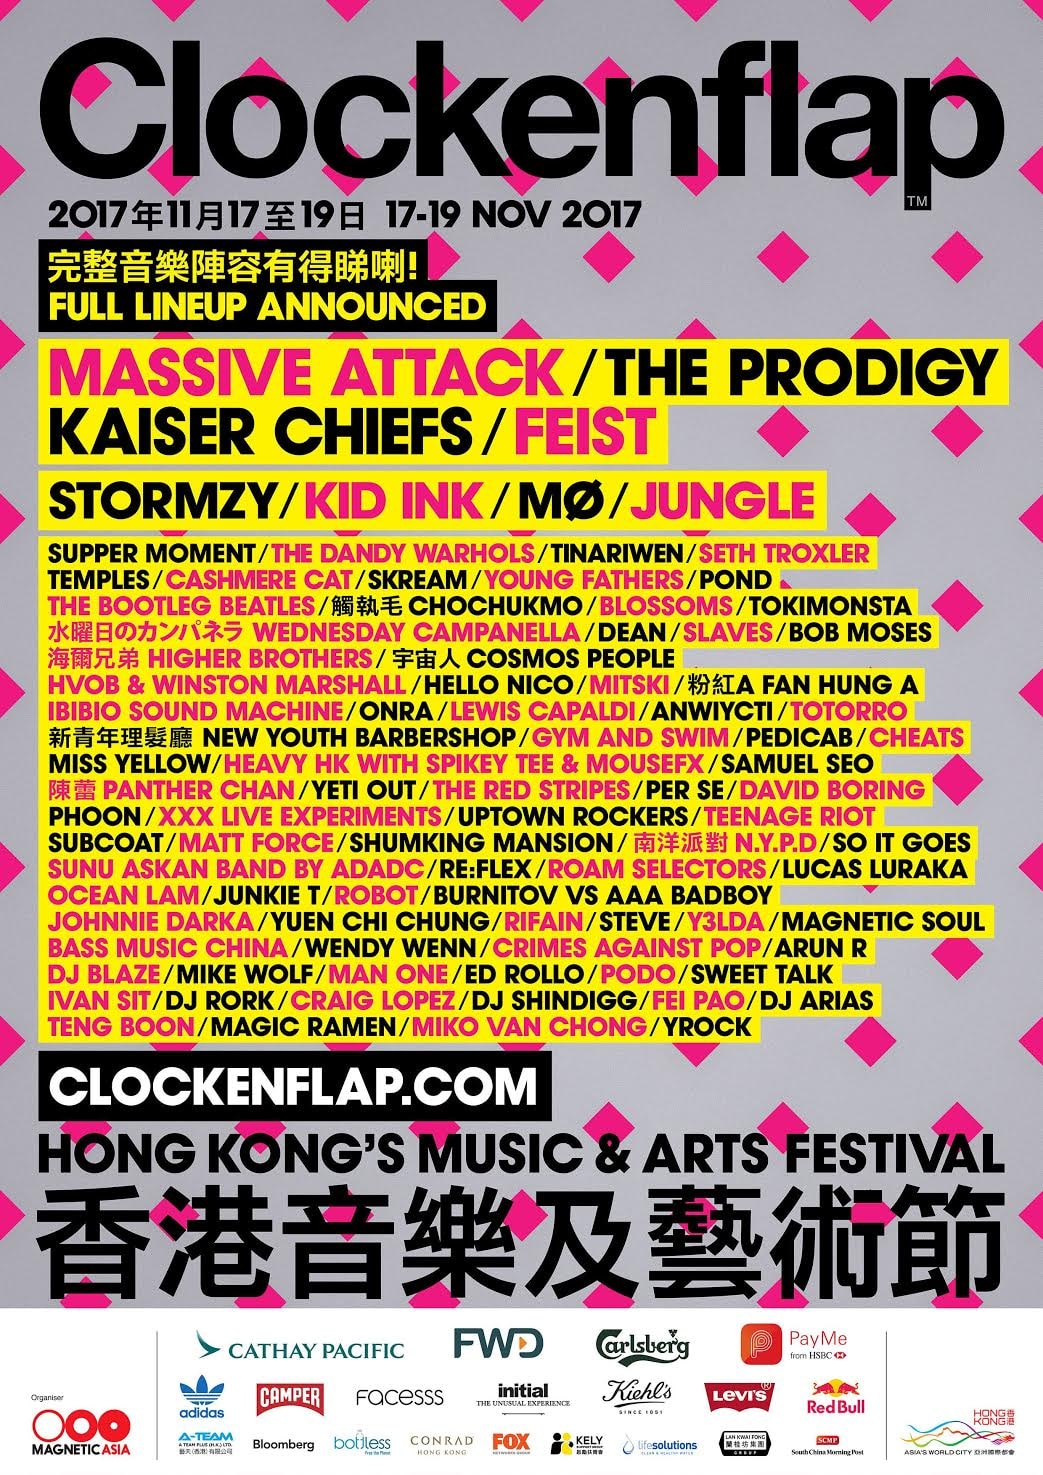 香港戶外音樂及藝術節 Clockenflap 完整音樂表演陣容公佈